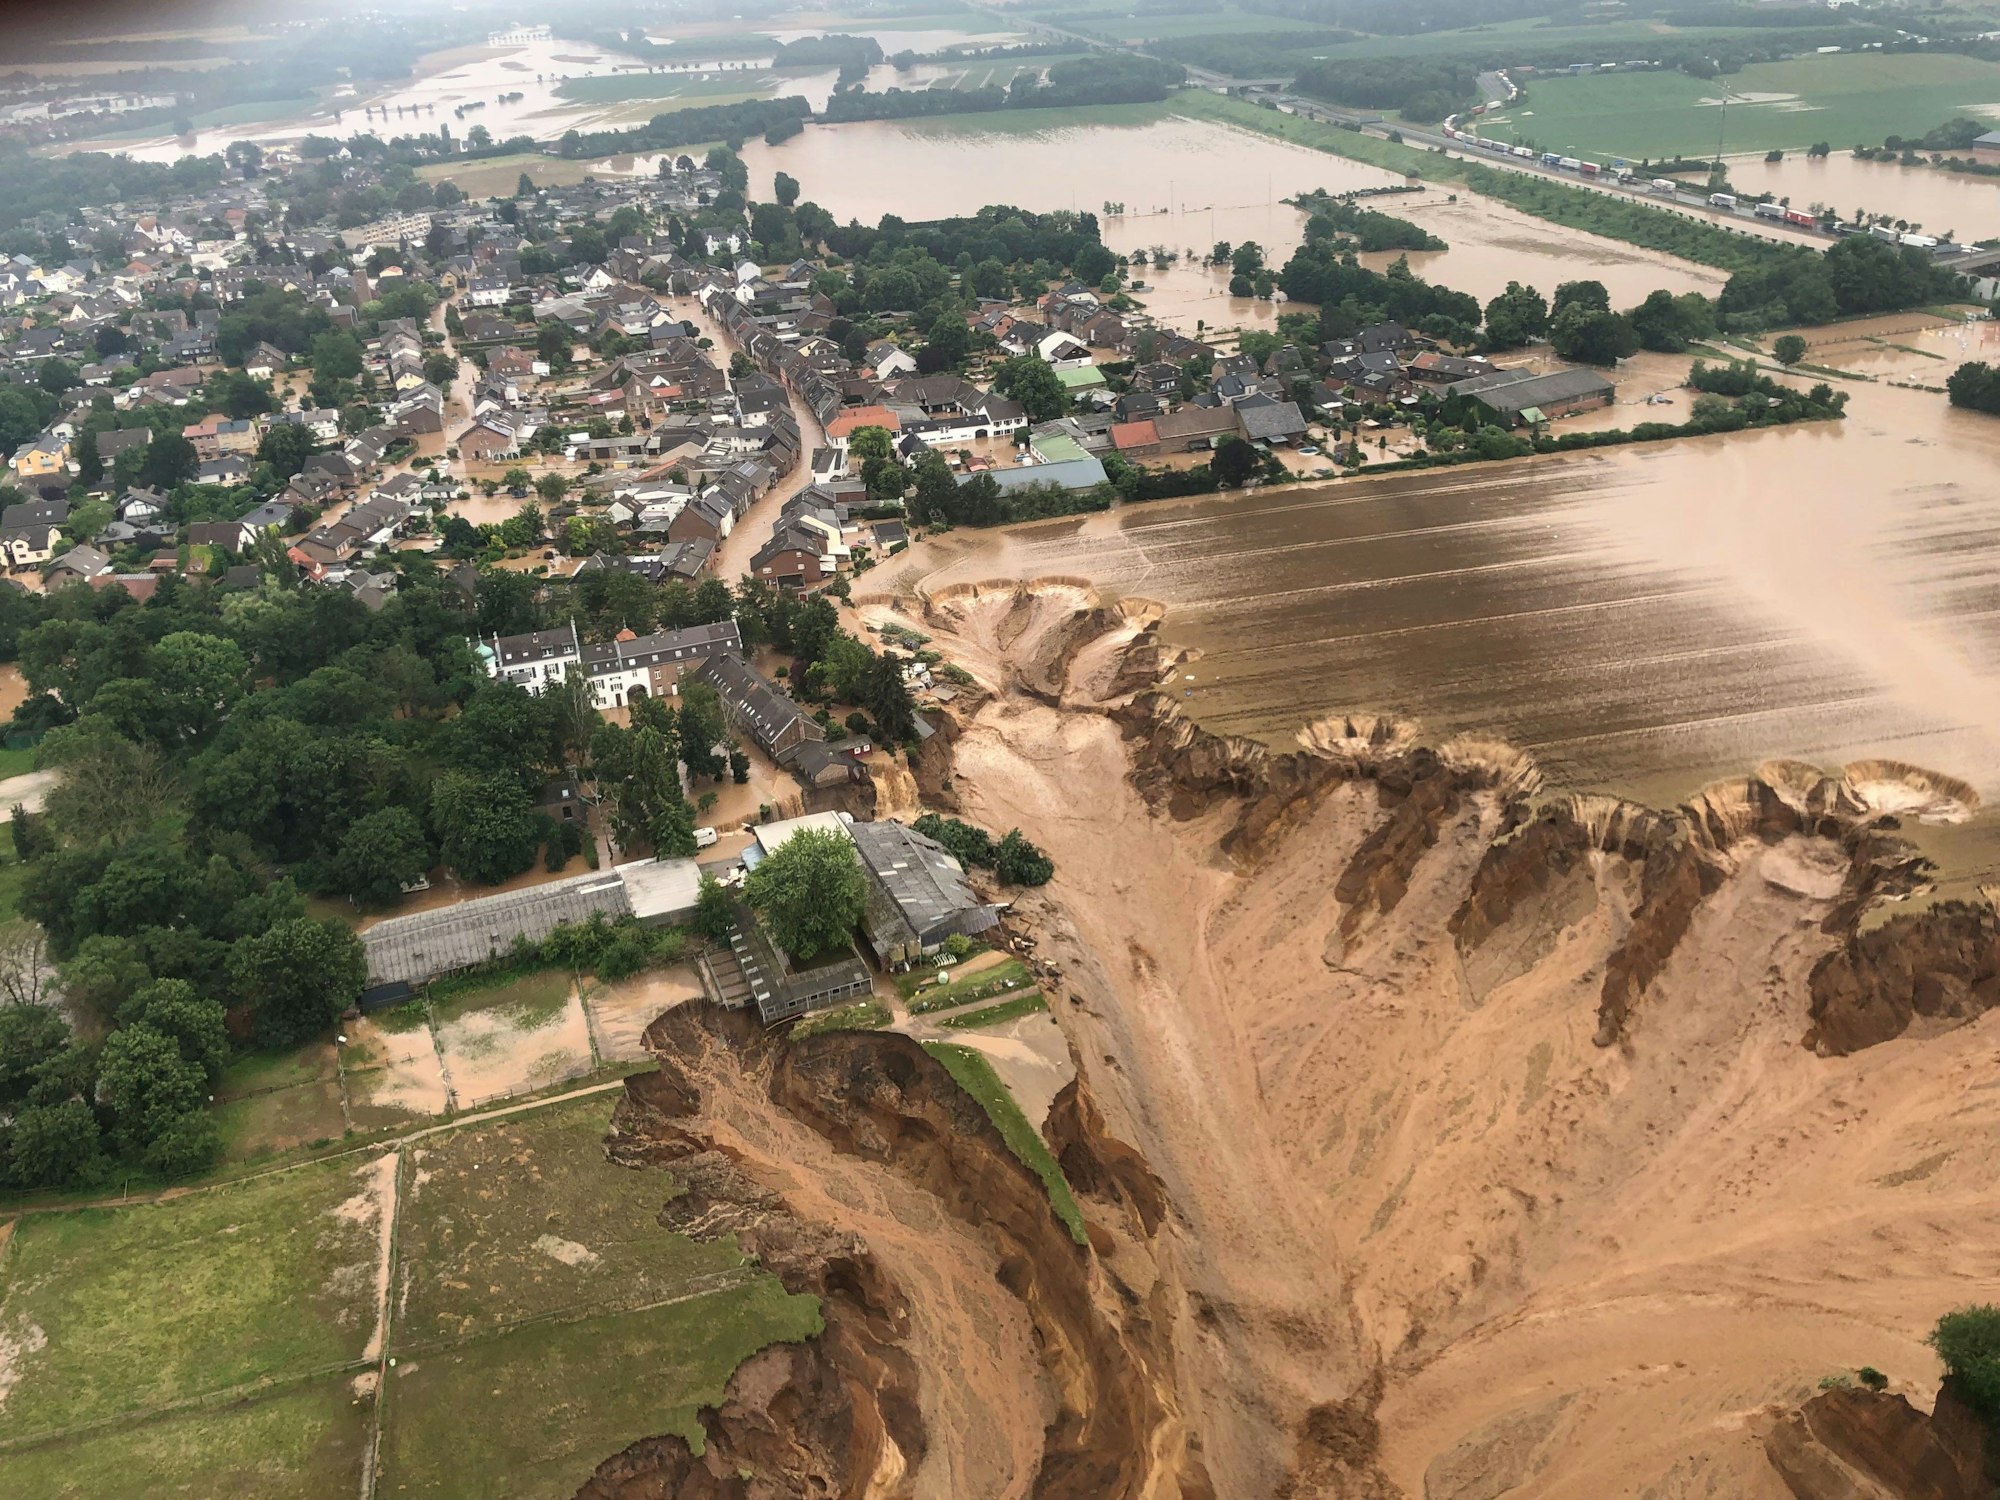 Ein Foto, das die Bezirksregierung Köln über Twitter verbreitete, zeigt Überschwemmungen in Erftstadt-Blessem. Ein Krater an der Kiesgrube hat mehrere Häuser mit sich gerissen.